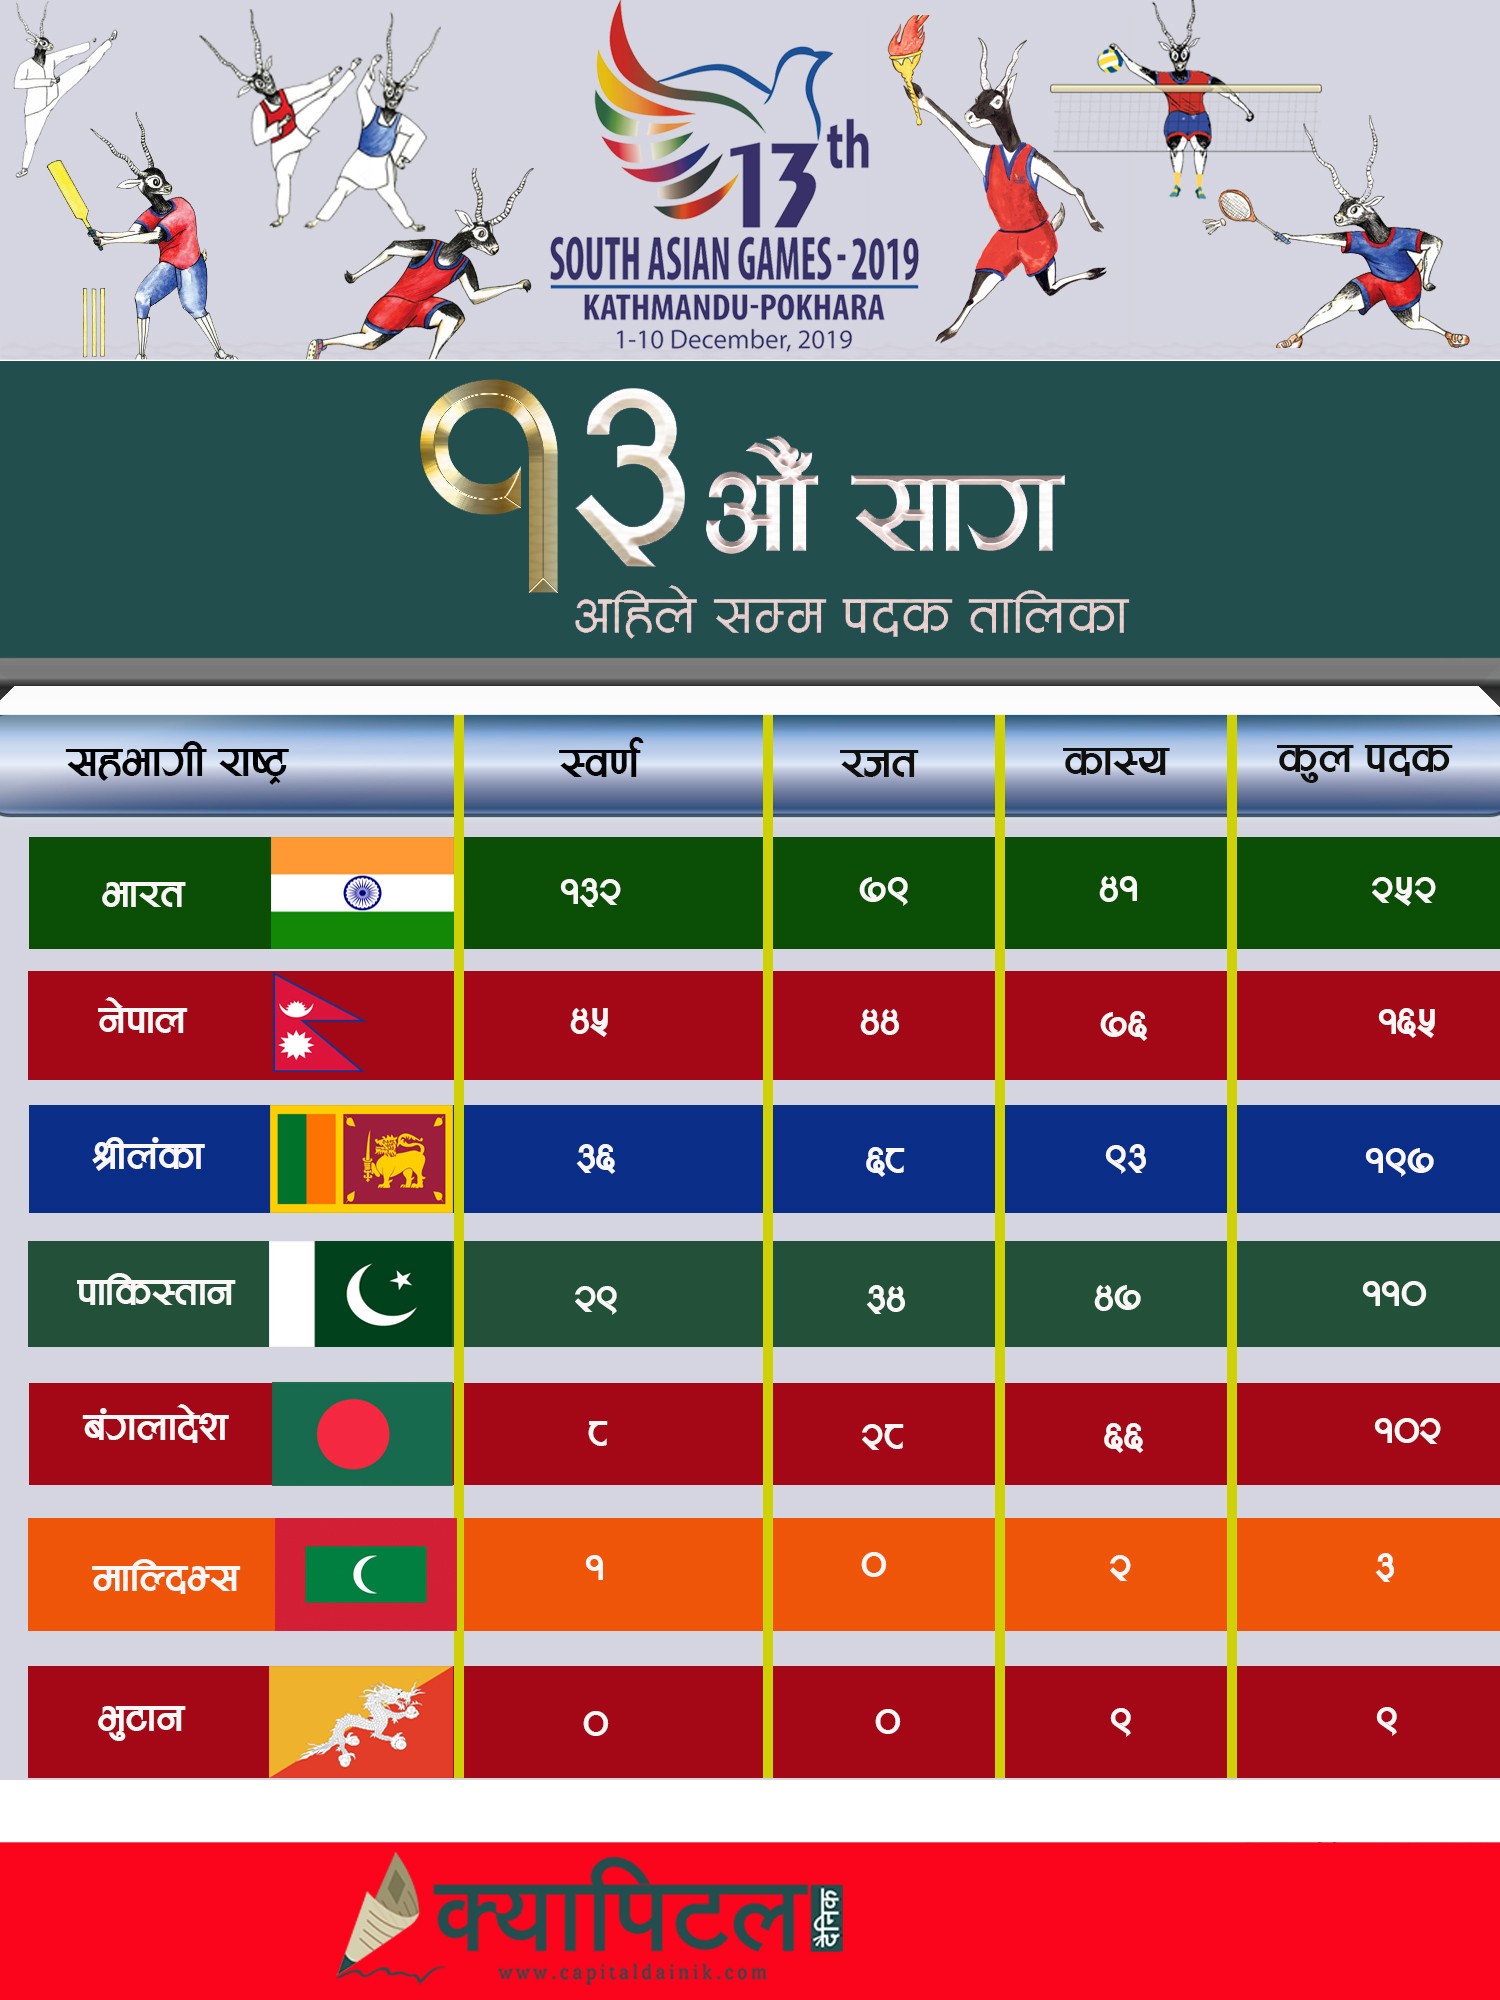 नेपालमा जारी १३औँ दक्षिण एसियाली खेलकूद(साग)मा कुन देशले कति पदक जिते ?